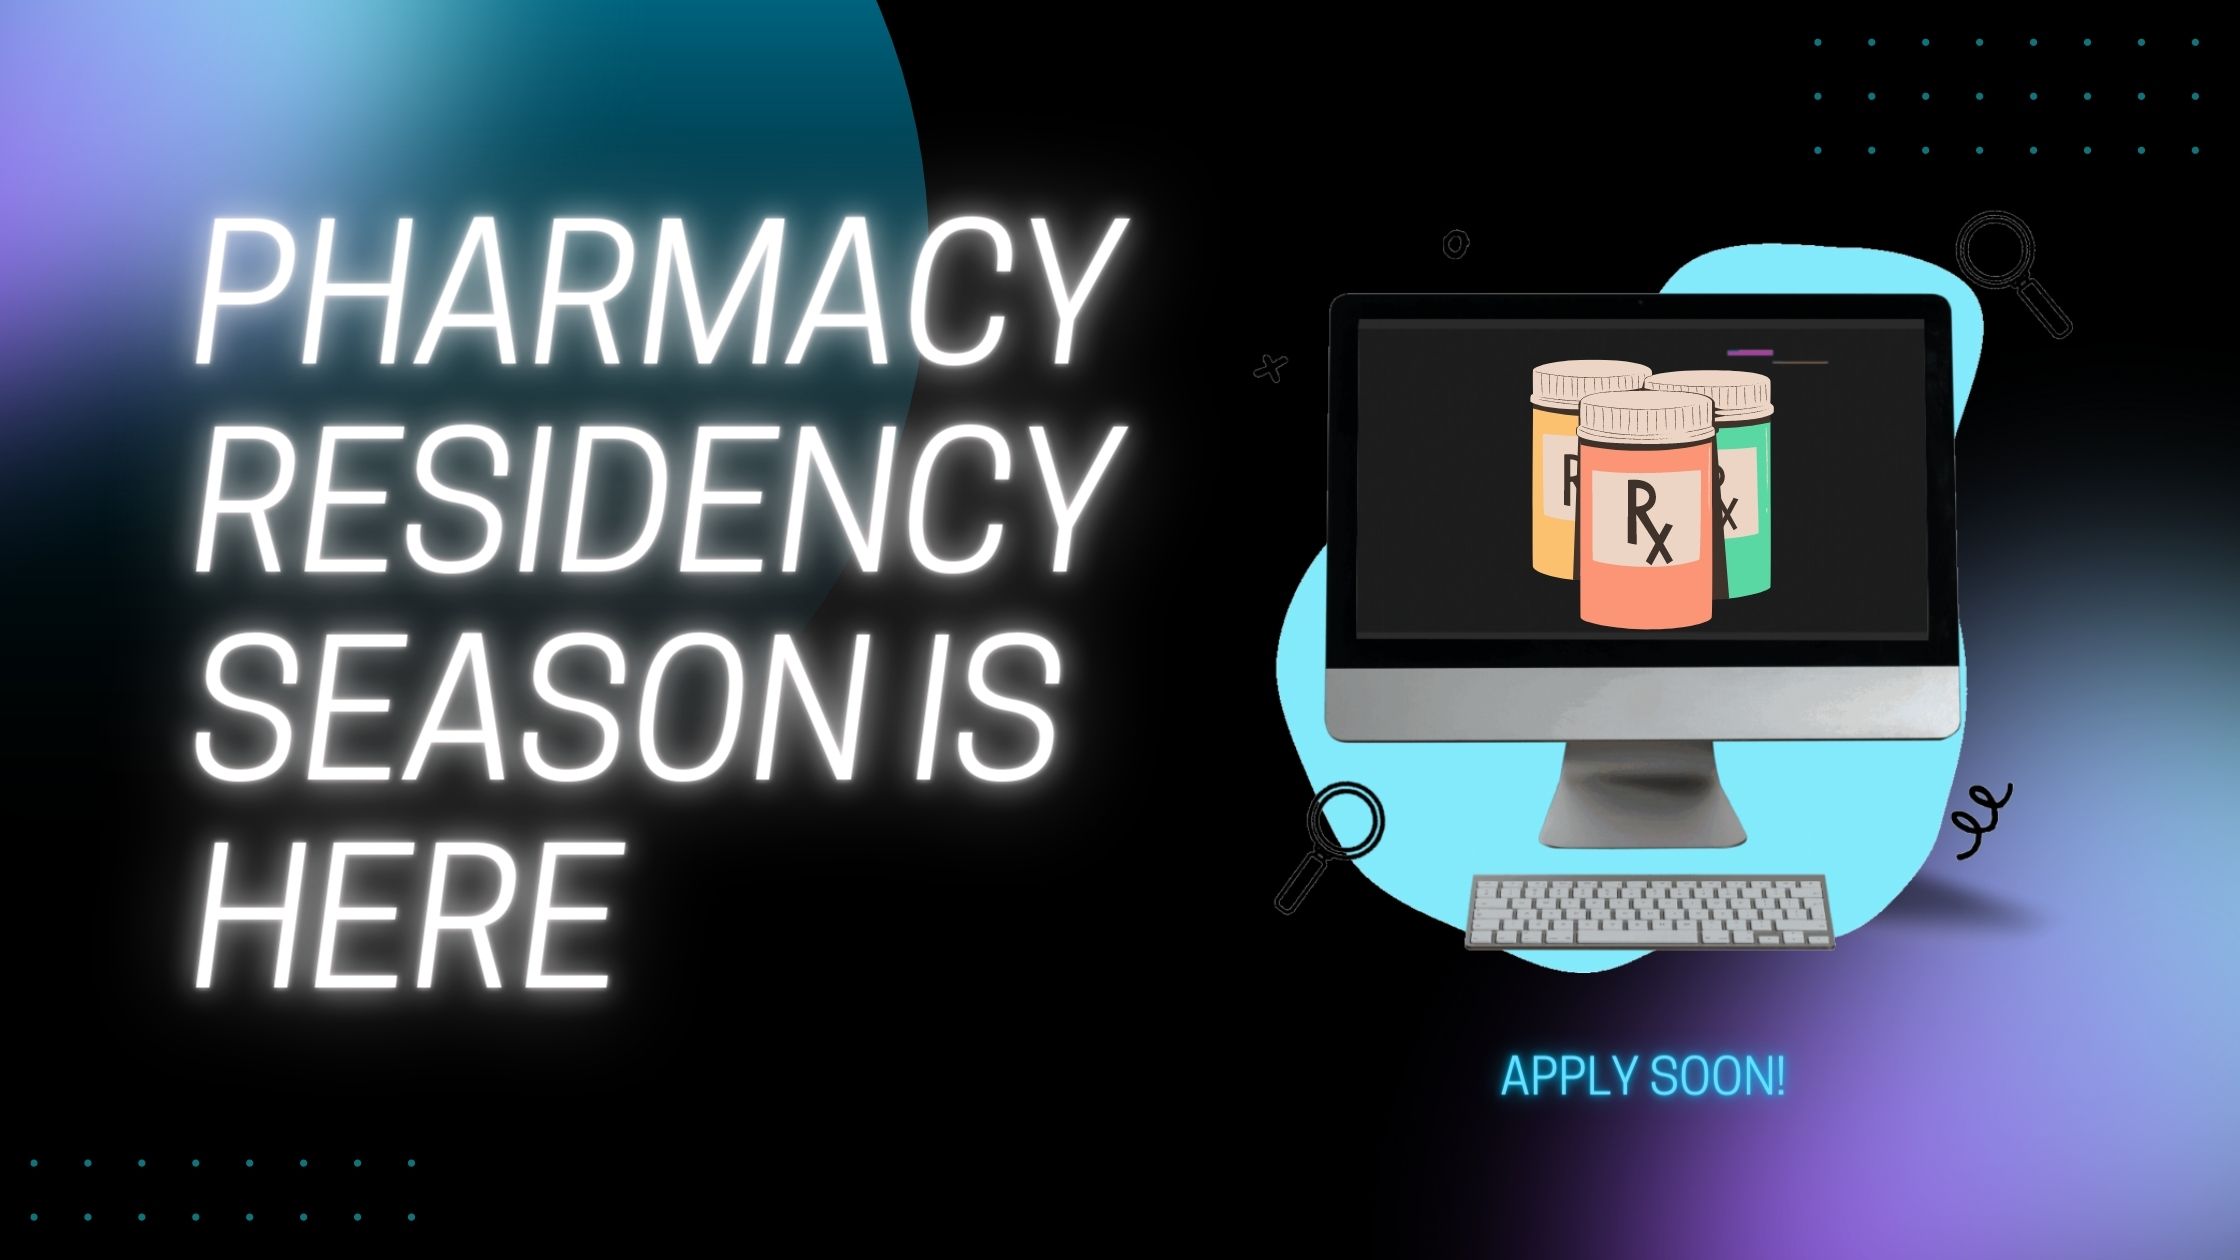 pharmacy residency season is here